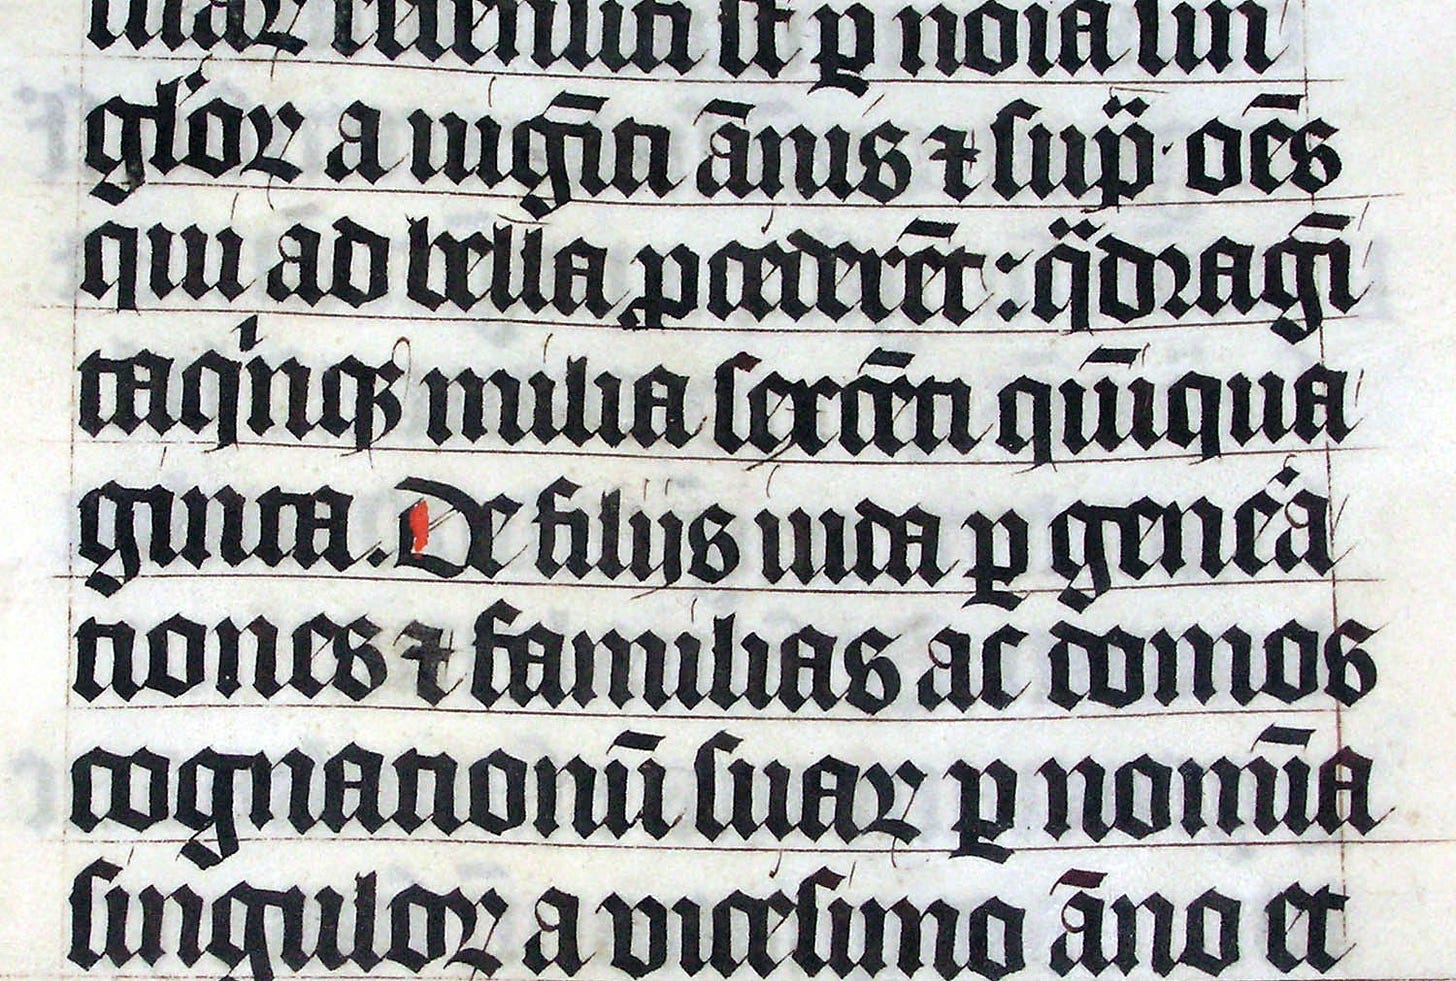 Manuscrito em letras góticas. Algumas palavras como “De”, “bella”, “paederet” e “domos” mostram letras ligadas por estruturas em comum